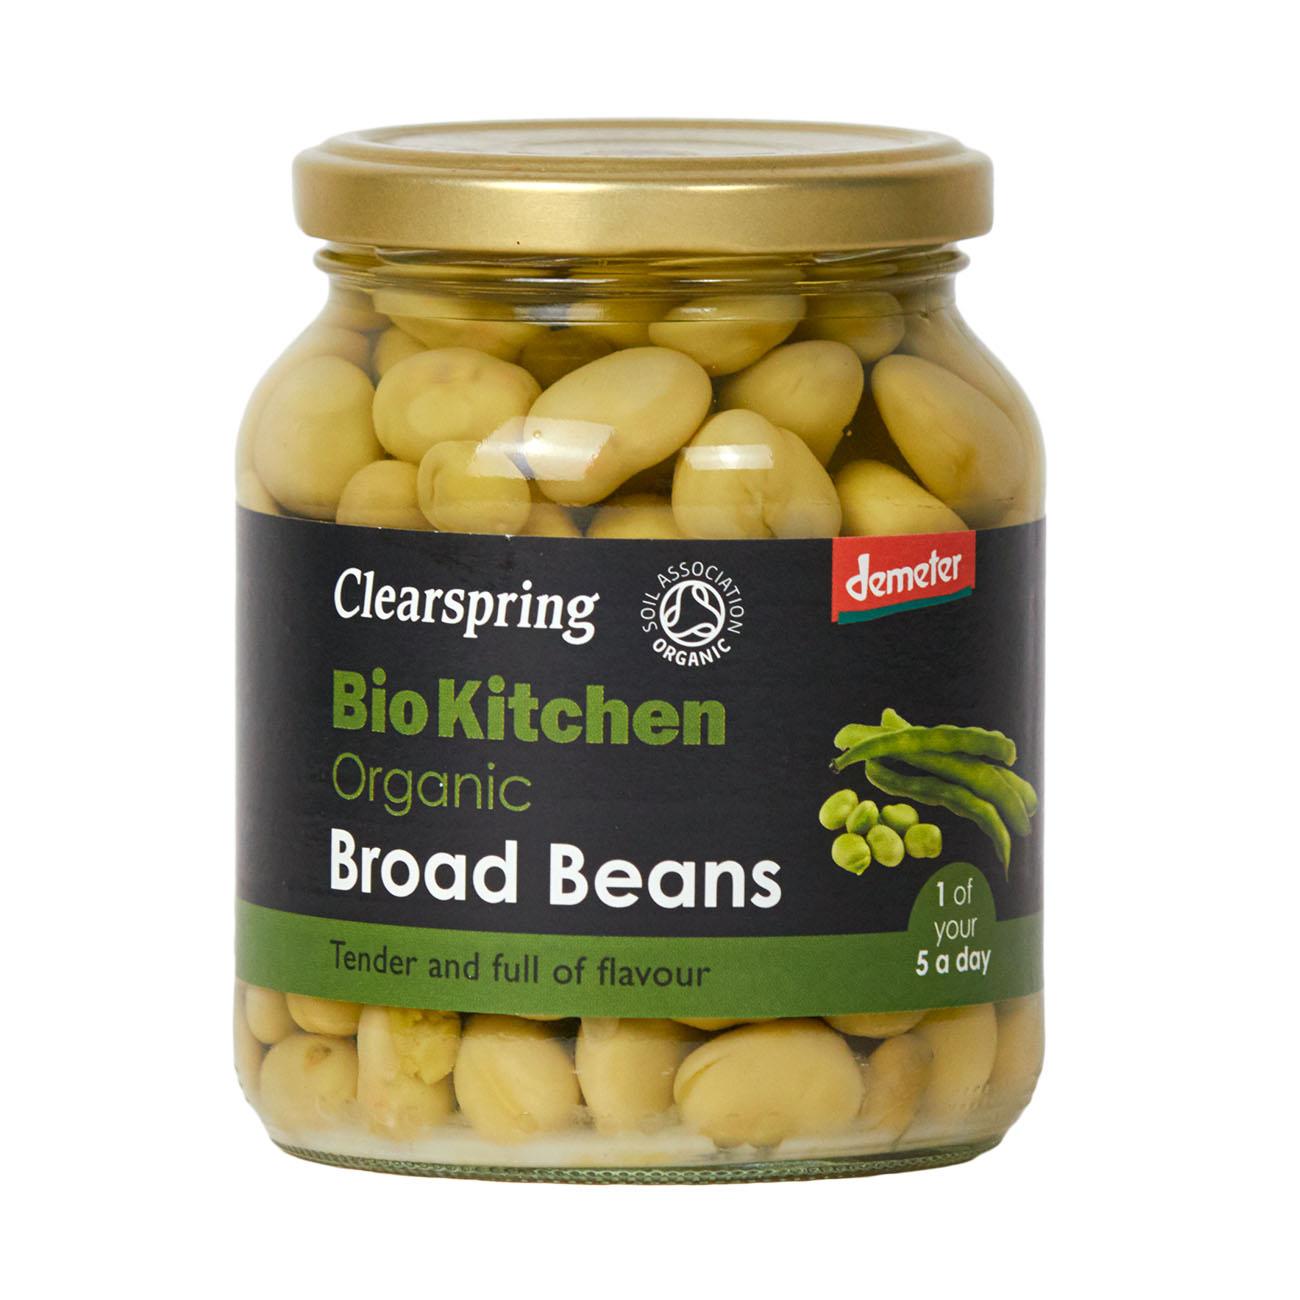 Organic Broad Beans Demeter Bio Kitchen 350g